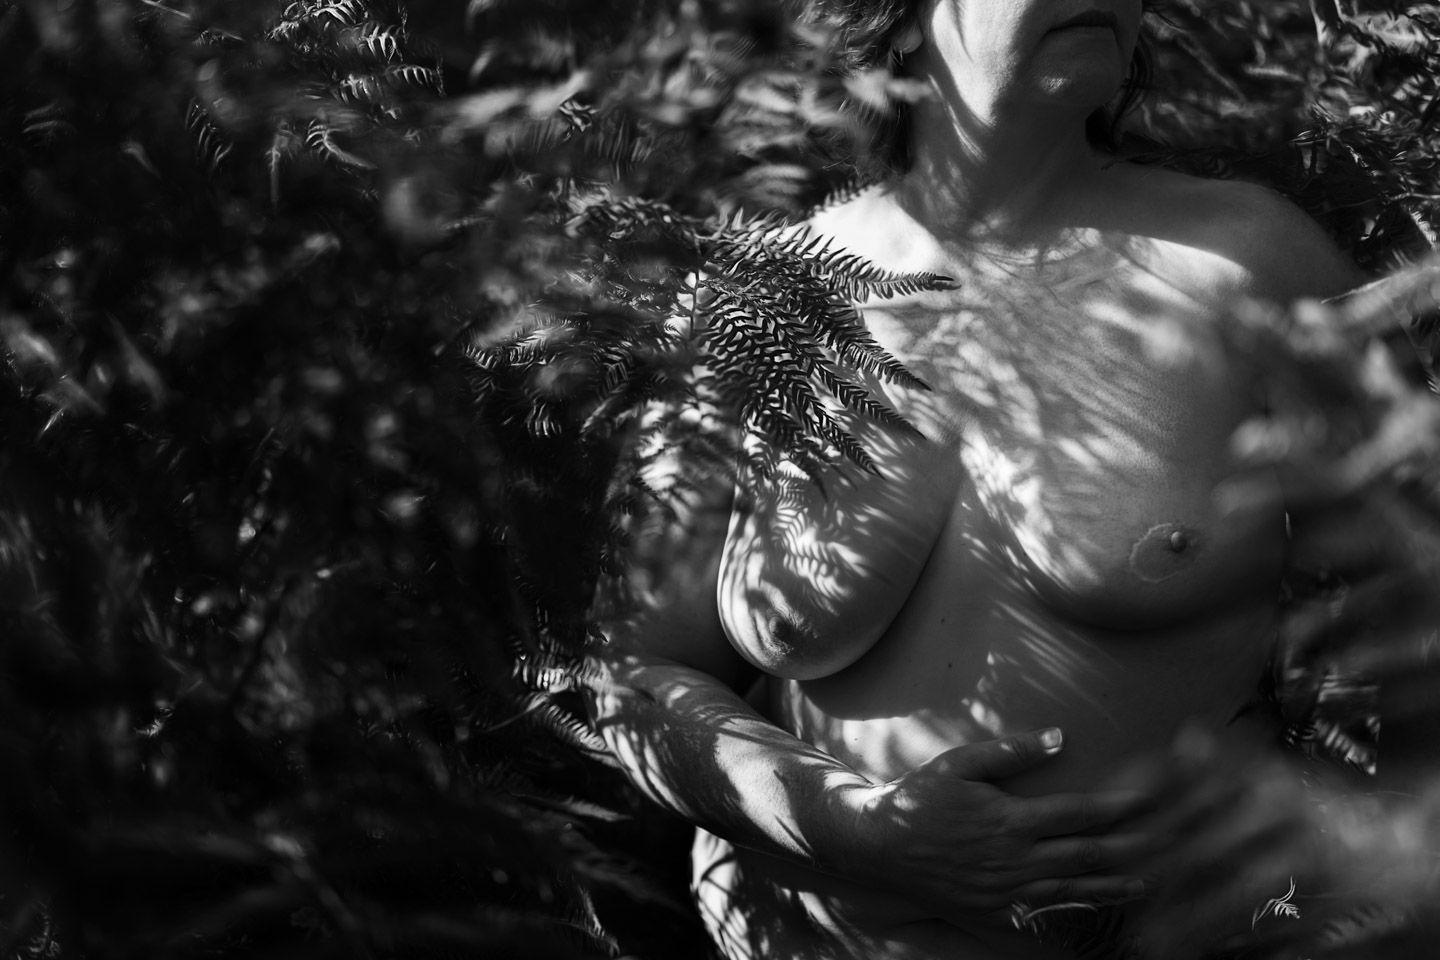 Portrait noir et blanc d'une poitrine dénudée sous les ombres des fougères